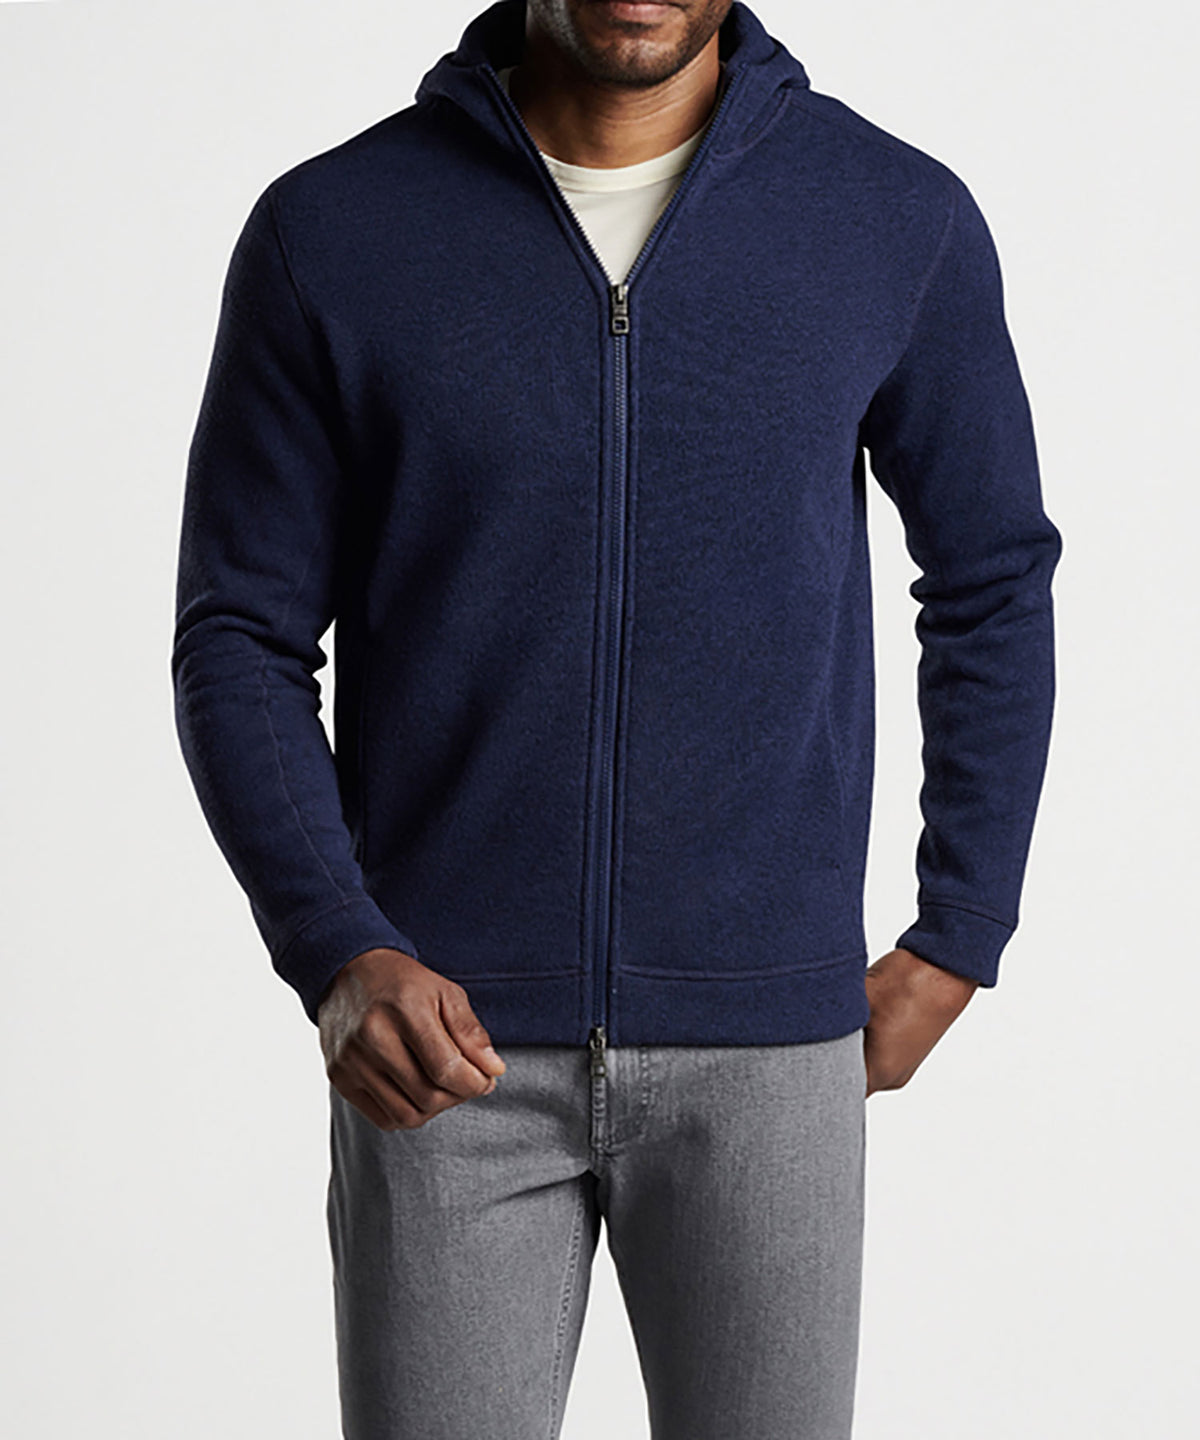 Peter Millar Sweater Fleece Full Zip Hoodie